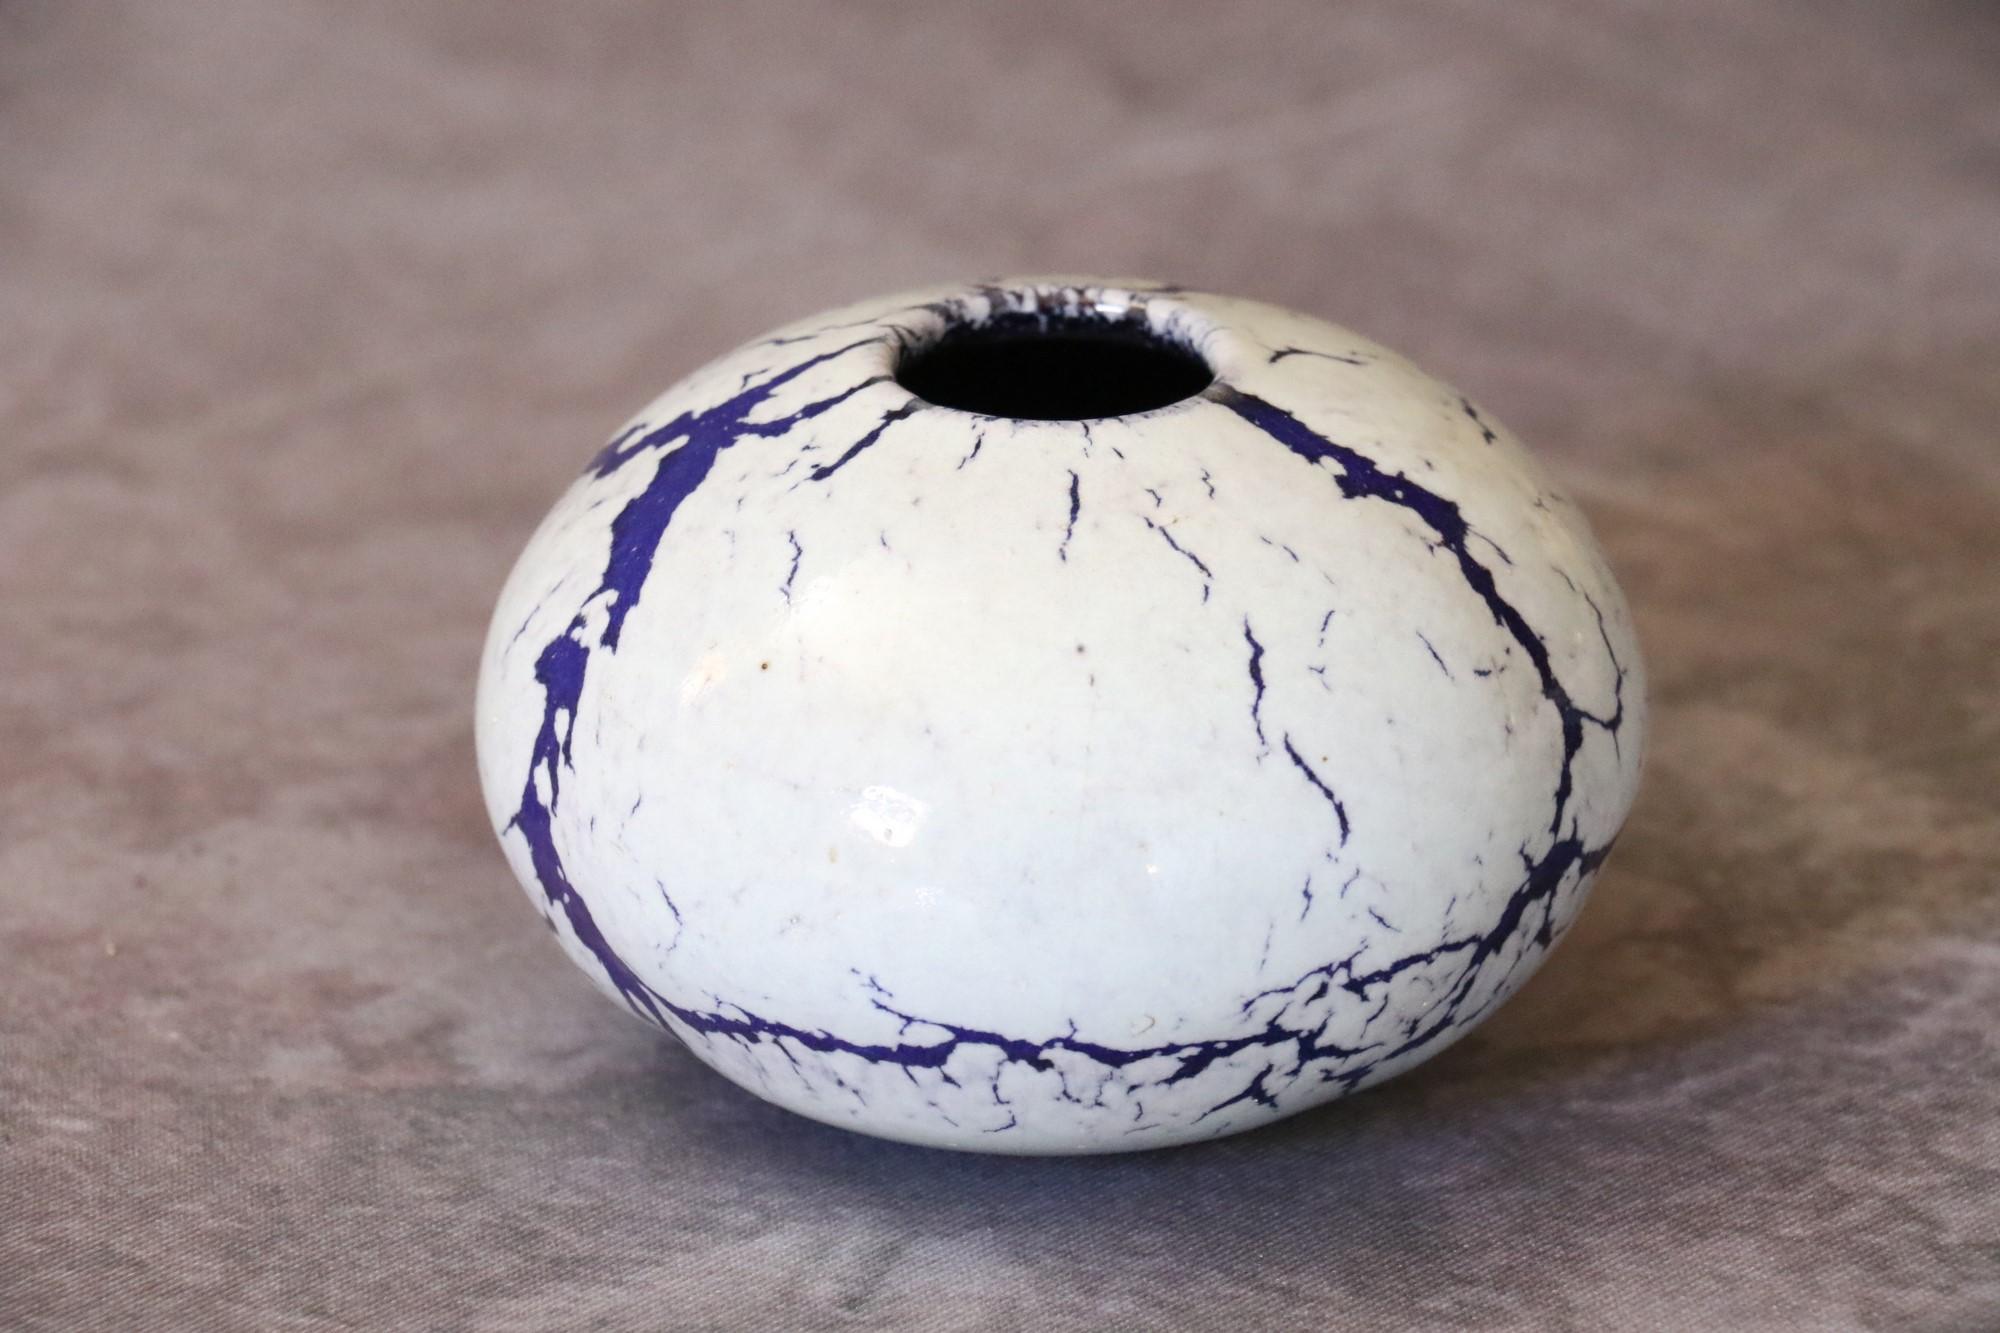 Jarrón bola de cerámica francesa morada y blanca de Marc Uzan, hacia 2000